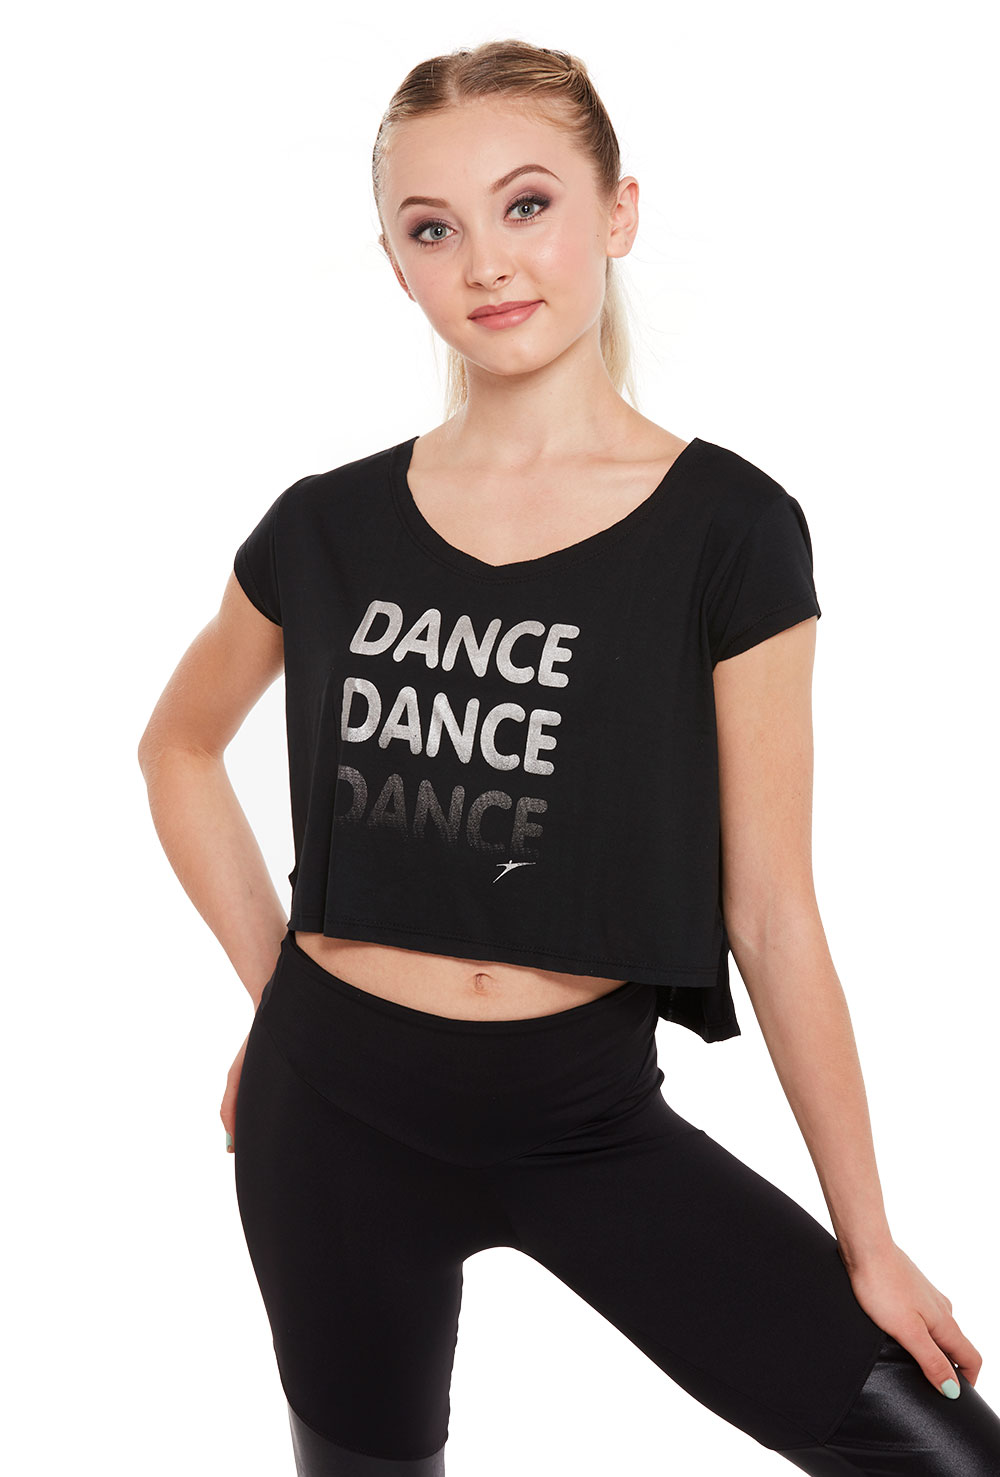 Dance Graphic Crop T-shirt - Porselli Dancewear